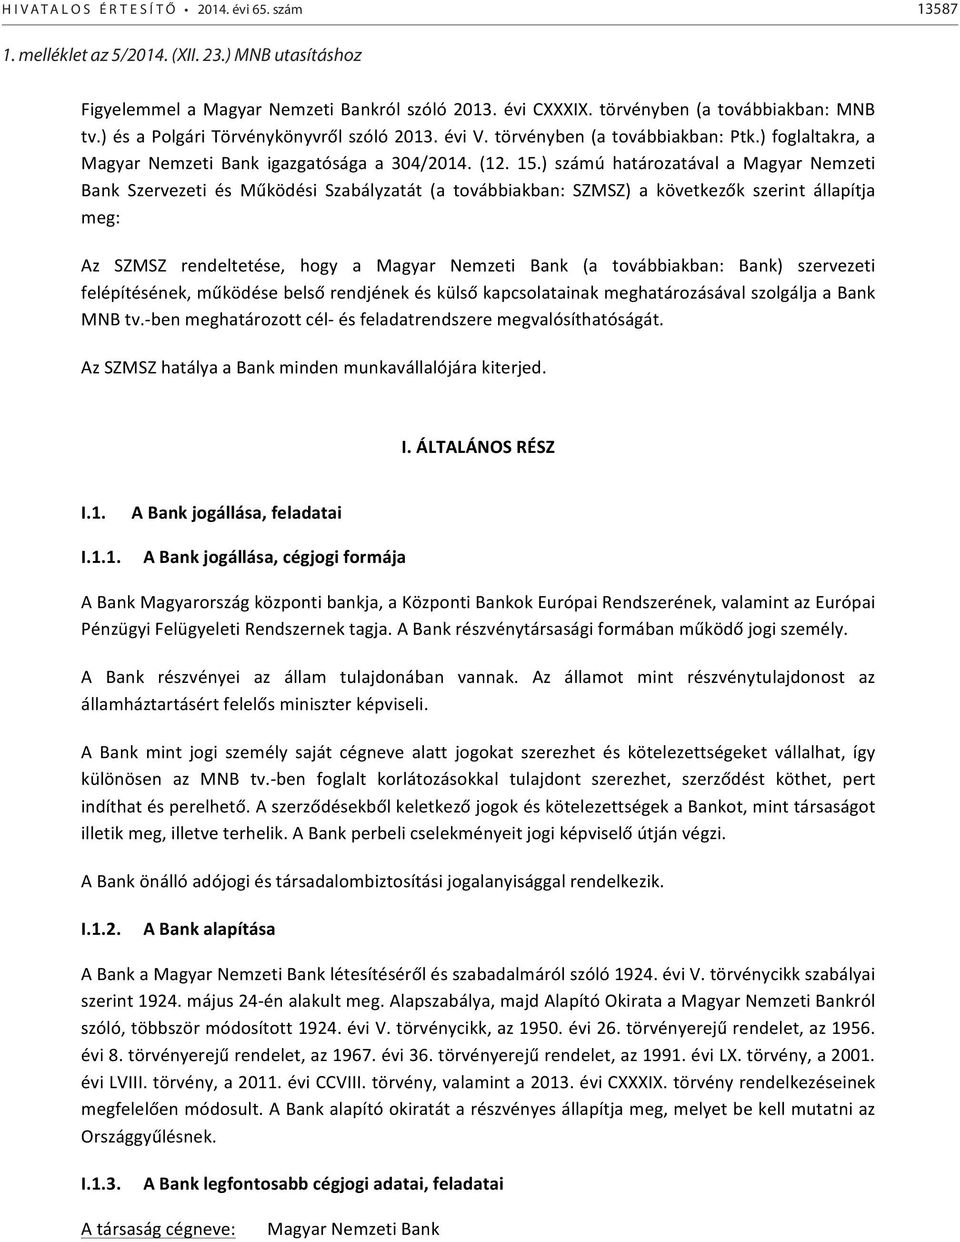 ) számú határozatával a Magyar Nemzeti Bank Szervezeti és Működési Szabályzatát (a továbbiakban: SZMSZ) a következők szerint állapítja meg: Az SZMSZ rendeltetése, hogy a Magyar Nemzeti Bank (a